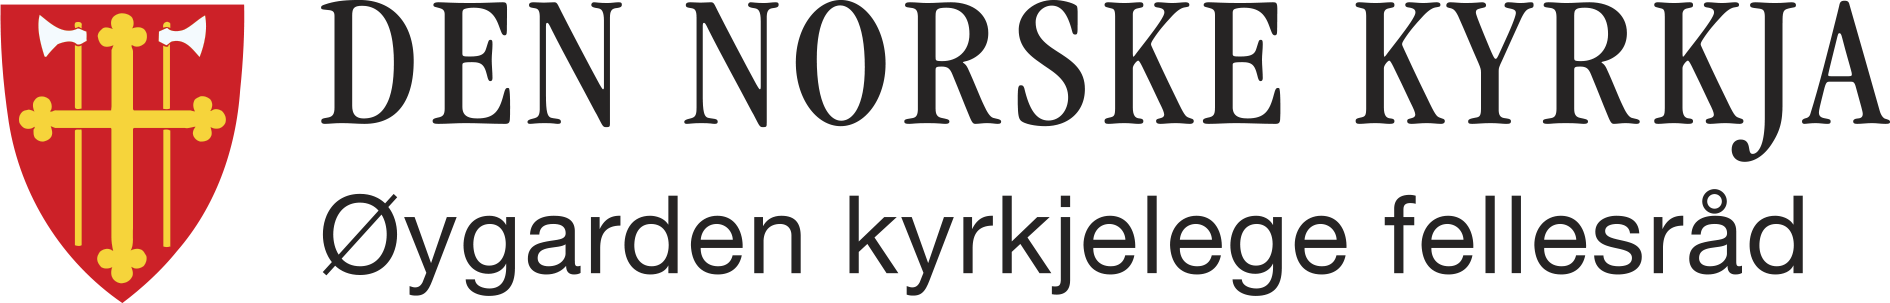 Øygarden kyrkjelege fellesråd logo